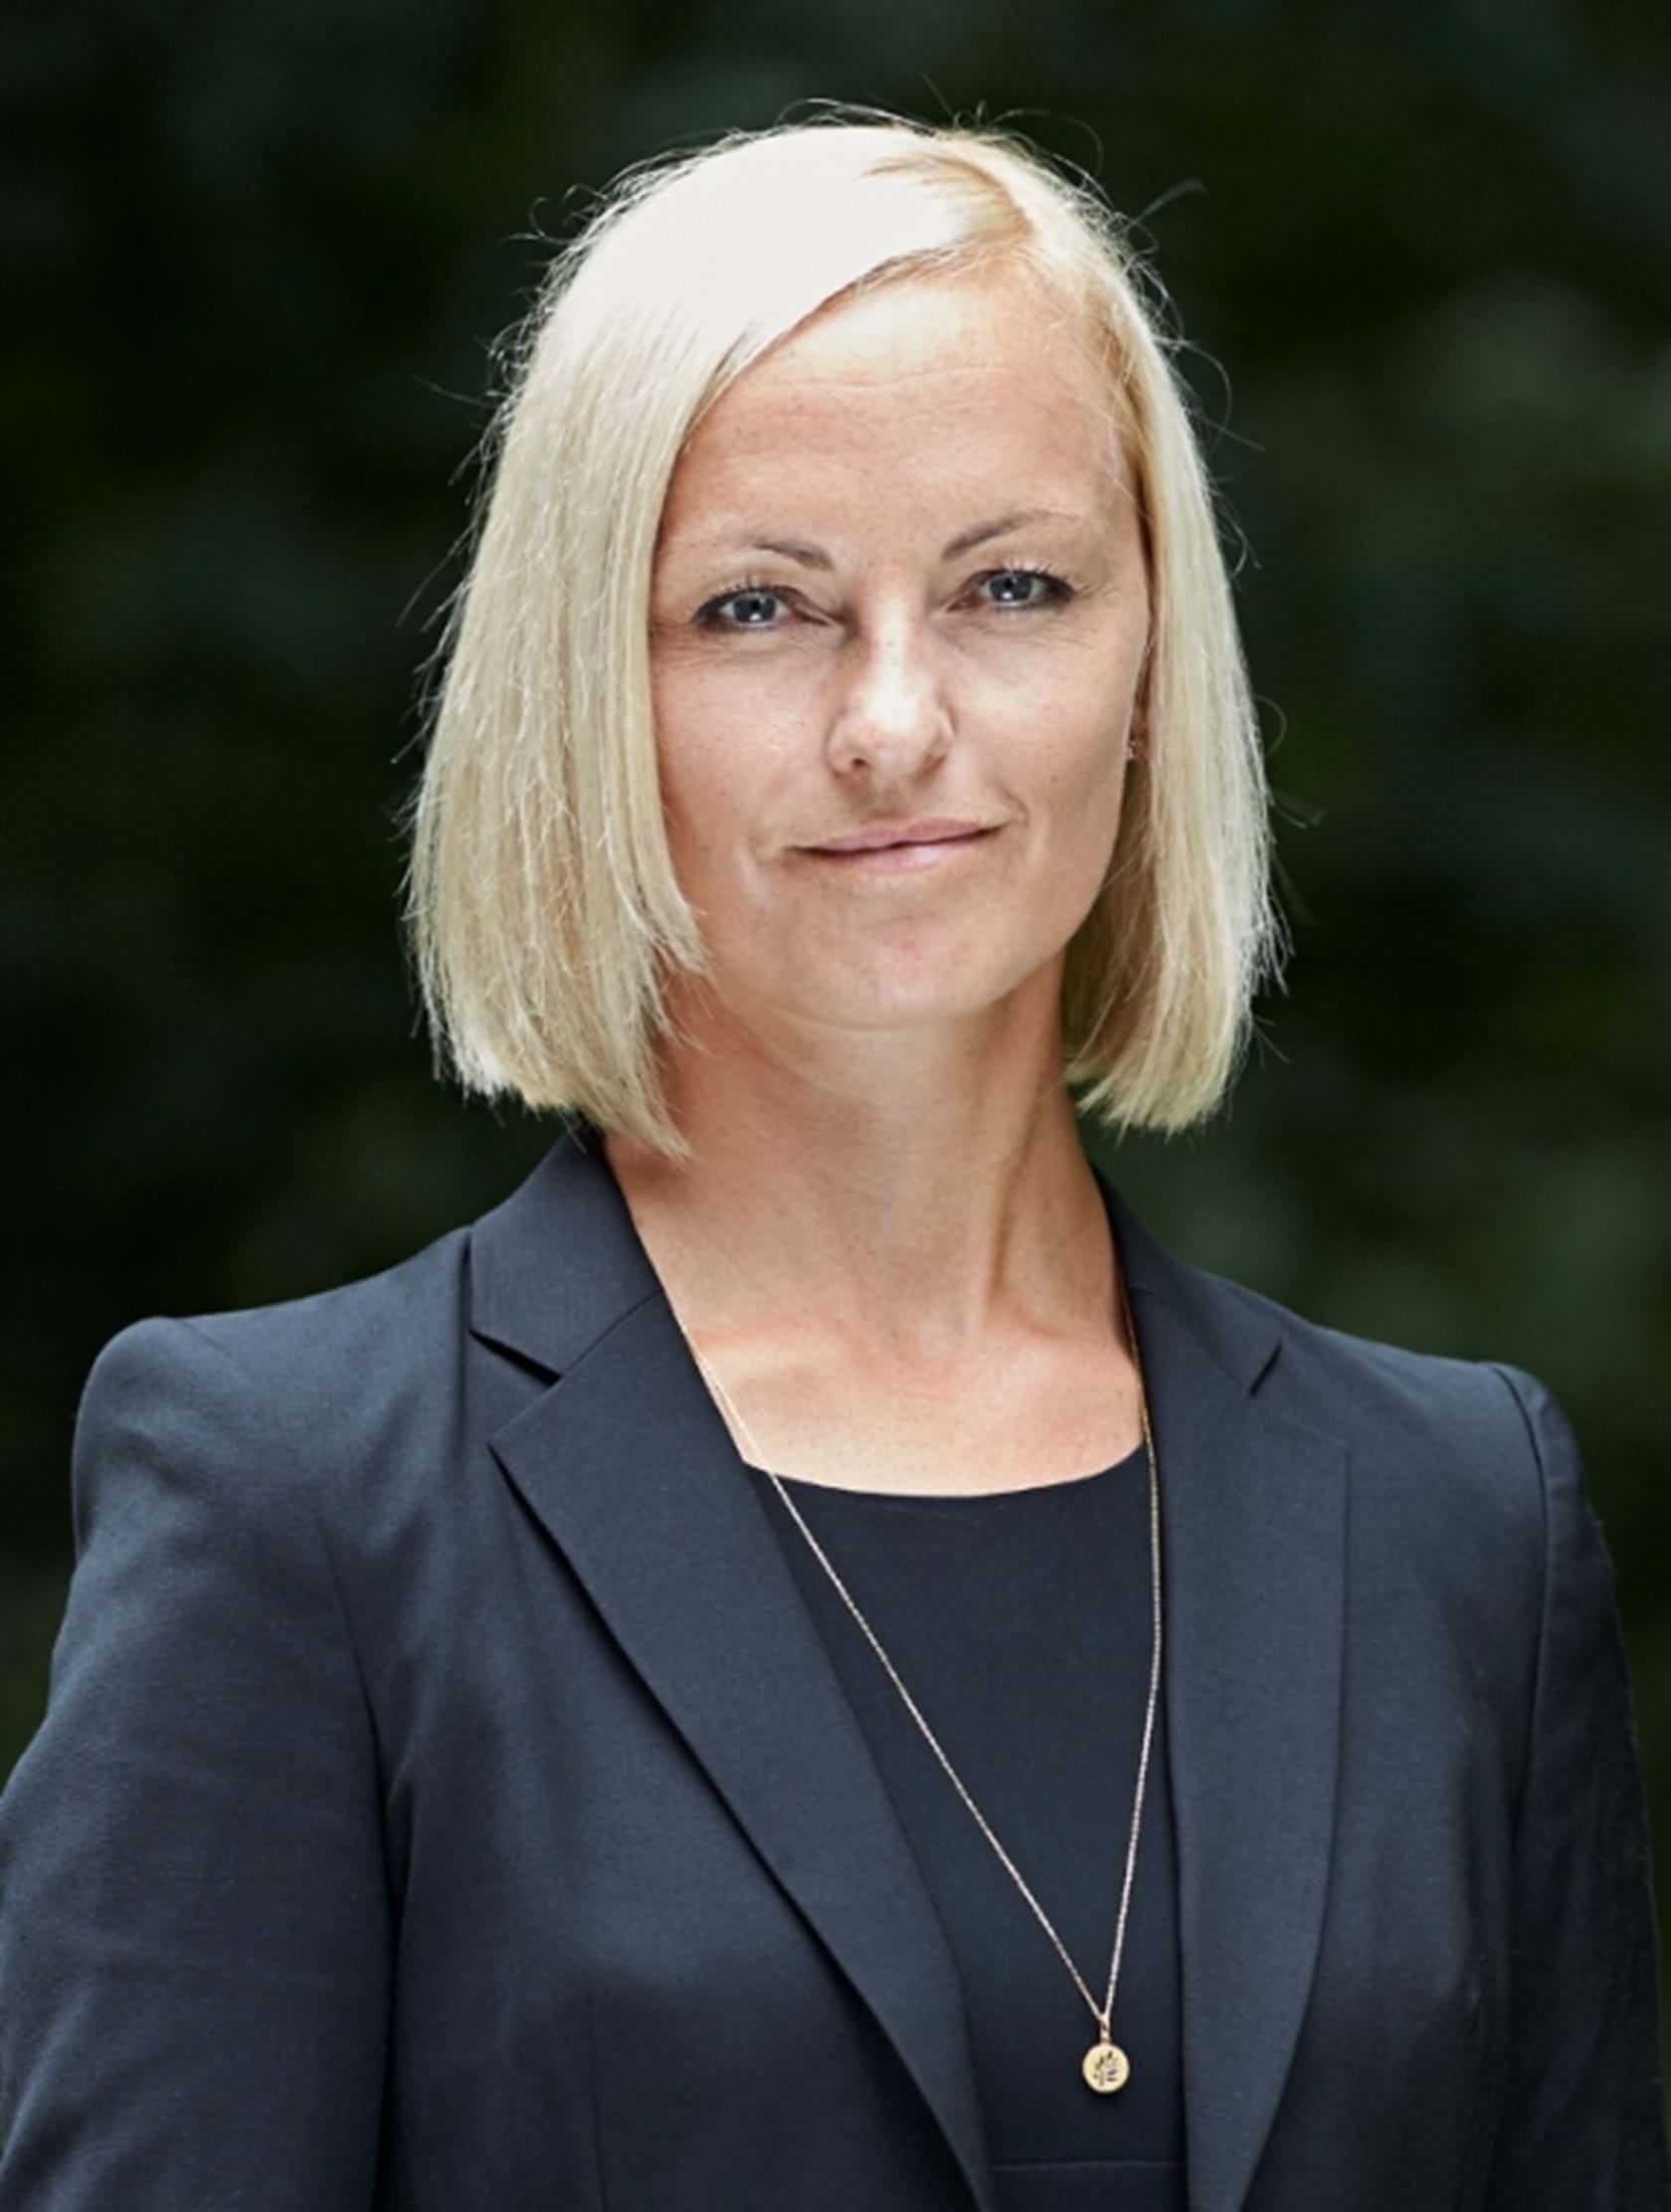 Maria Kofod Larsen